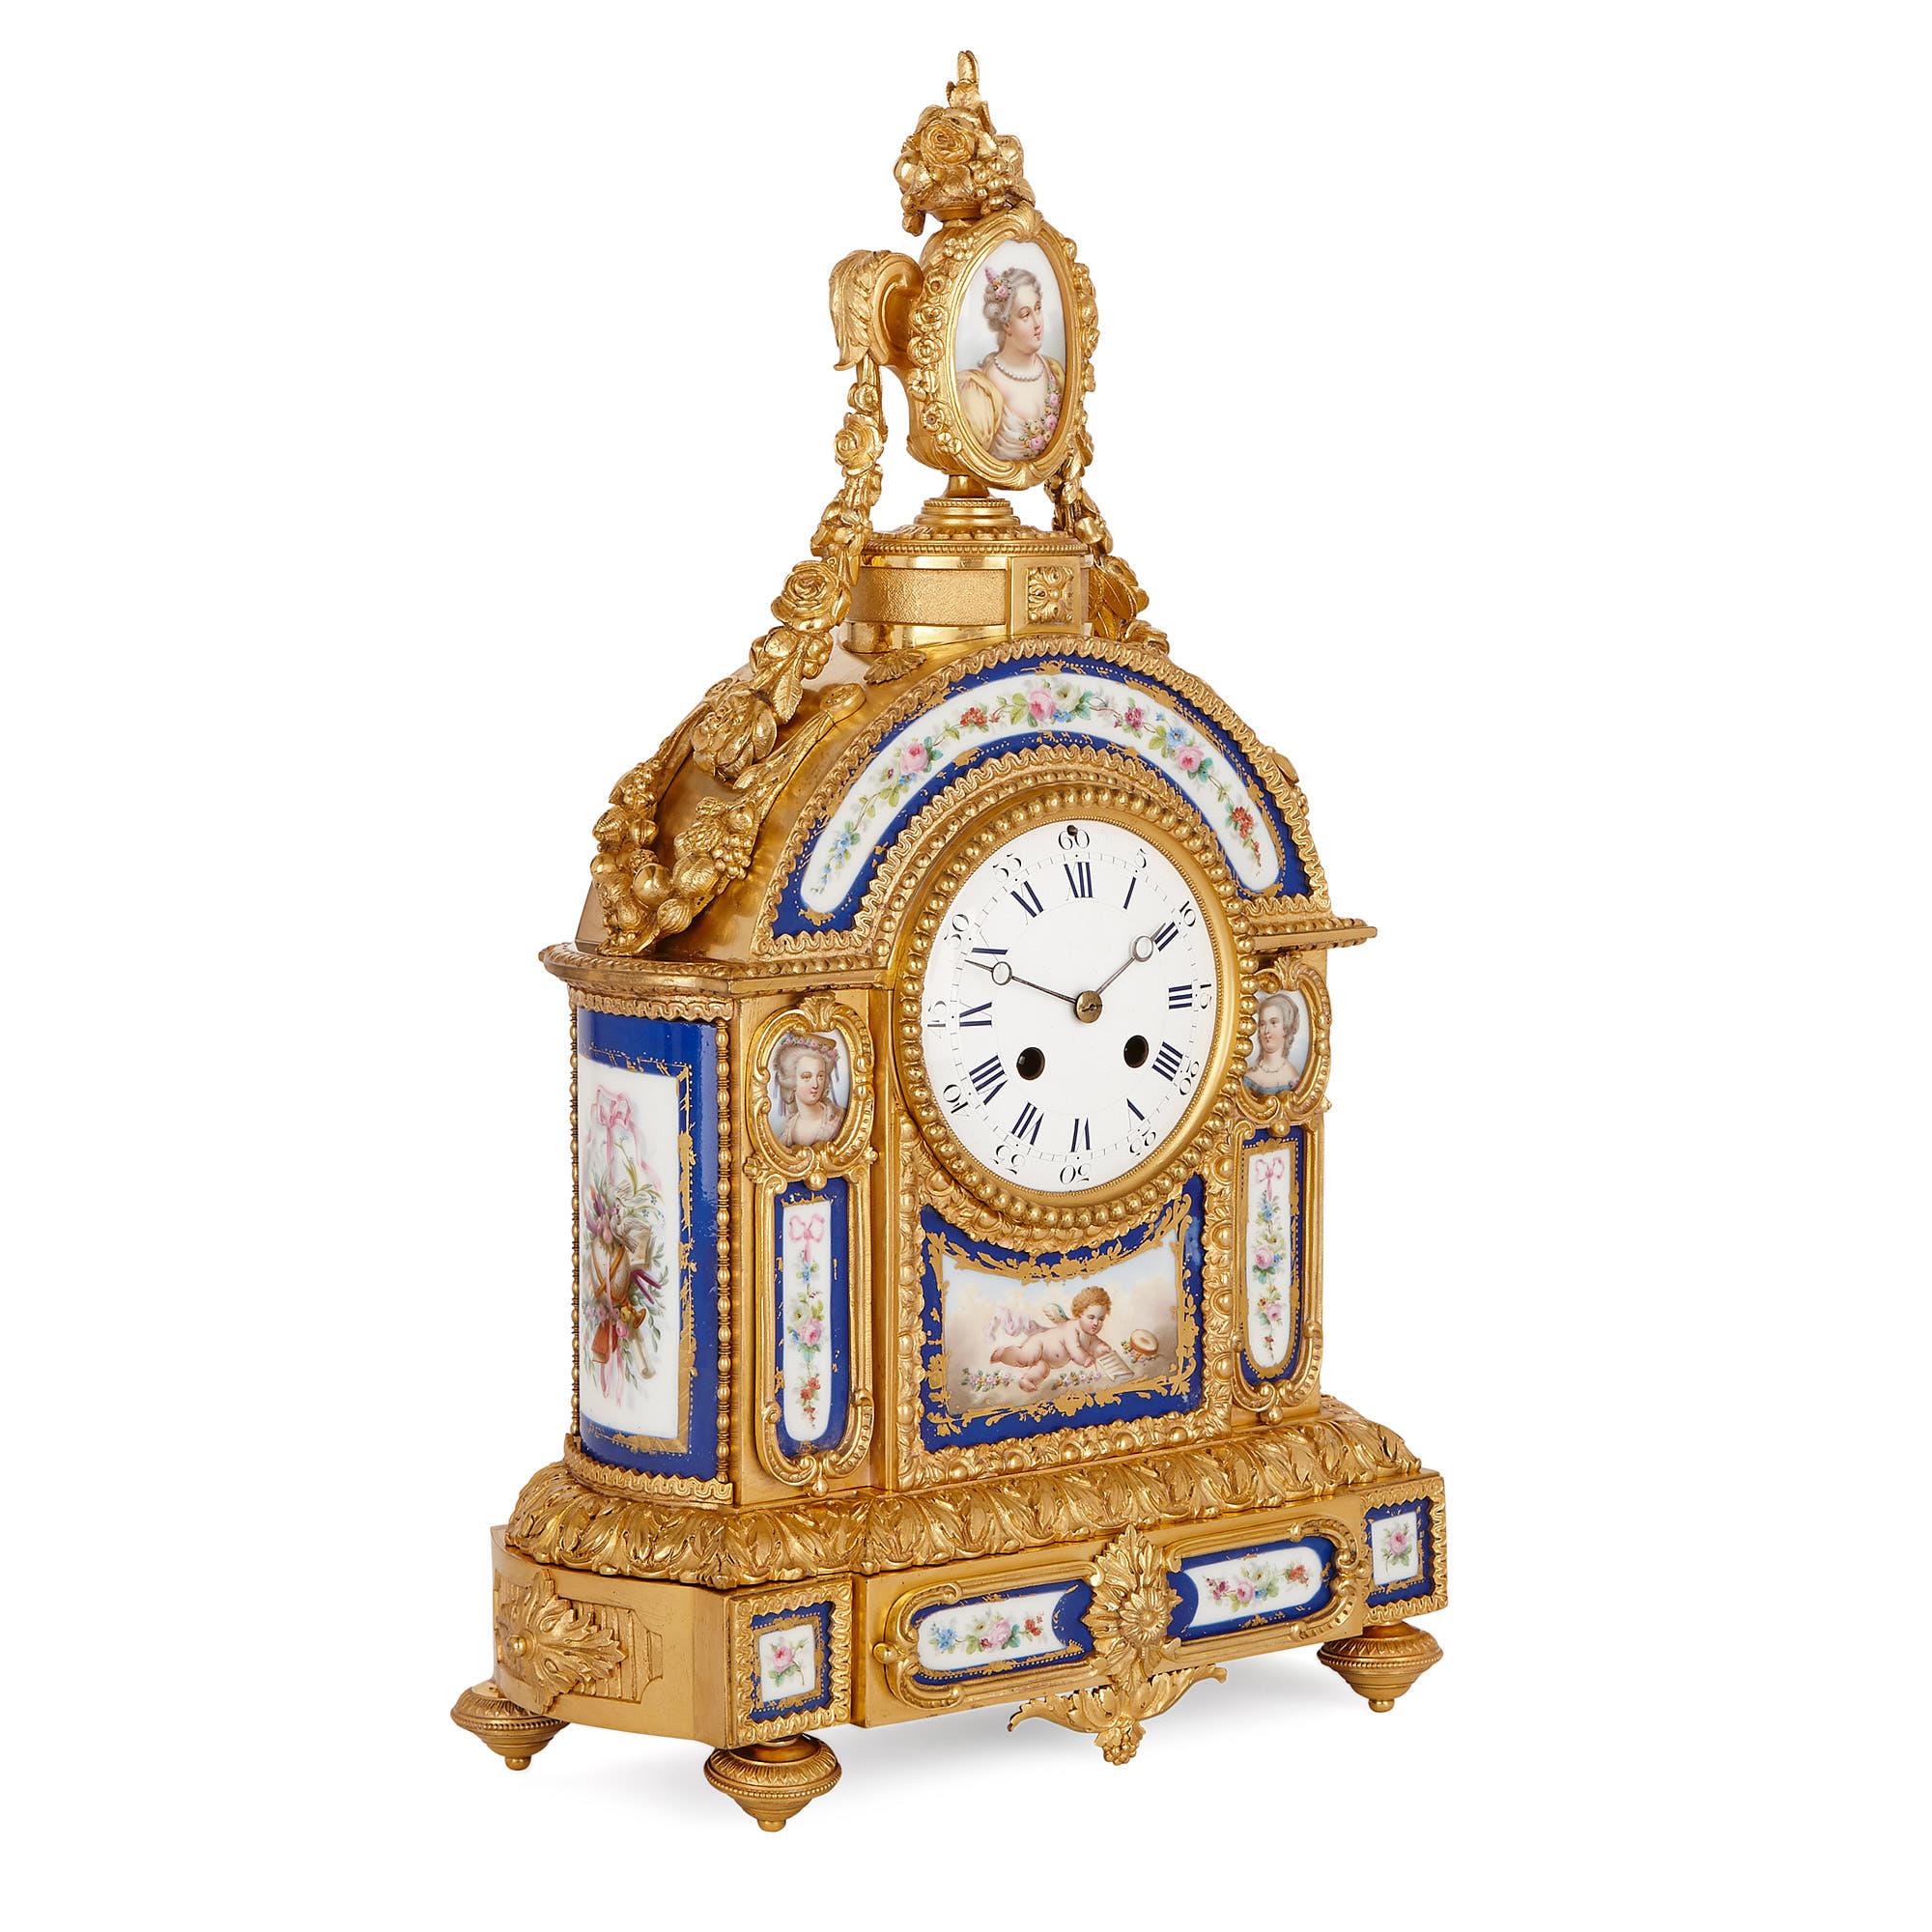 Diese Uhr im Sèvres-Stil ist ein elegantes Stück Design aus dem späten 19. Jahrhundert, das eine wunderbare Ergänzung für einen Kaminsims darstellt. Sie wurde in Bronze gegossen, vergoldet (Ormolu) und mit aufwendig bemalten Porzellanplatten